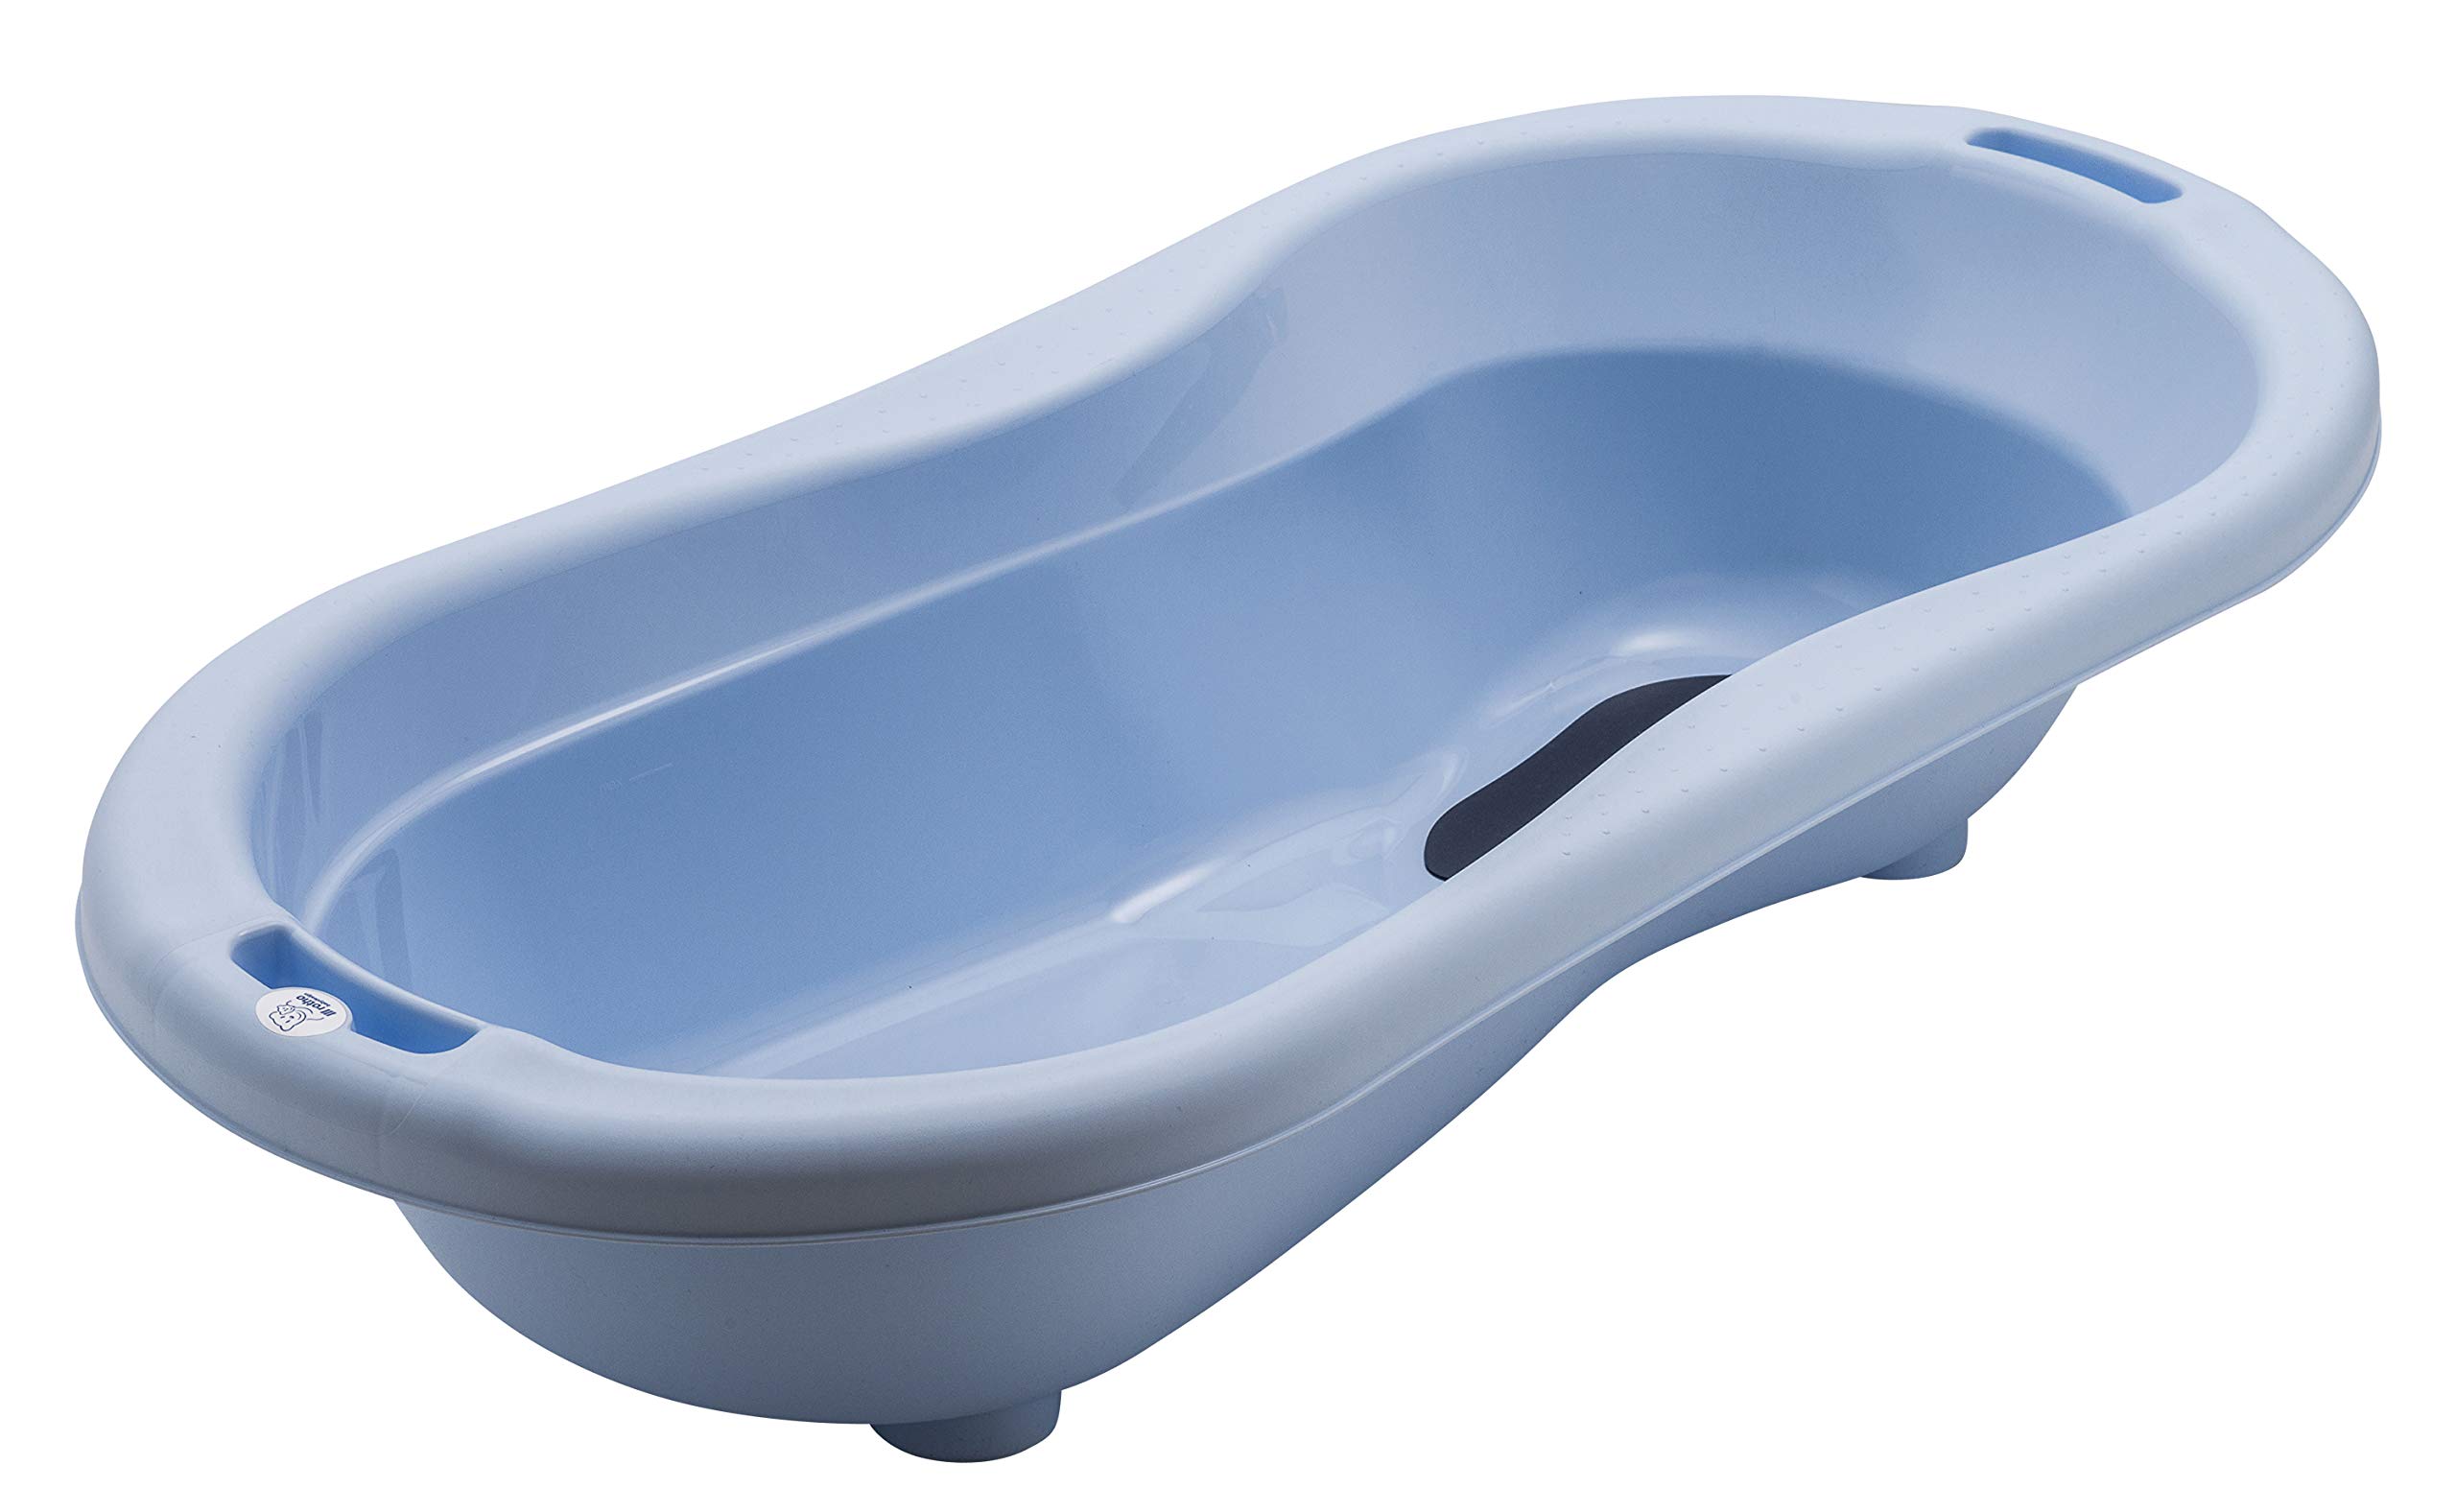 Rotho Babydesign TOP Xtra Große Badewanne, Mit 2 Antirutschmatten und Ablaufstöpsel, Ideal für 2 Kinder, 0-36 Monate, Sky Blue (Hellblau), 20500 0289